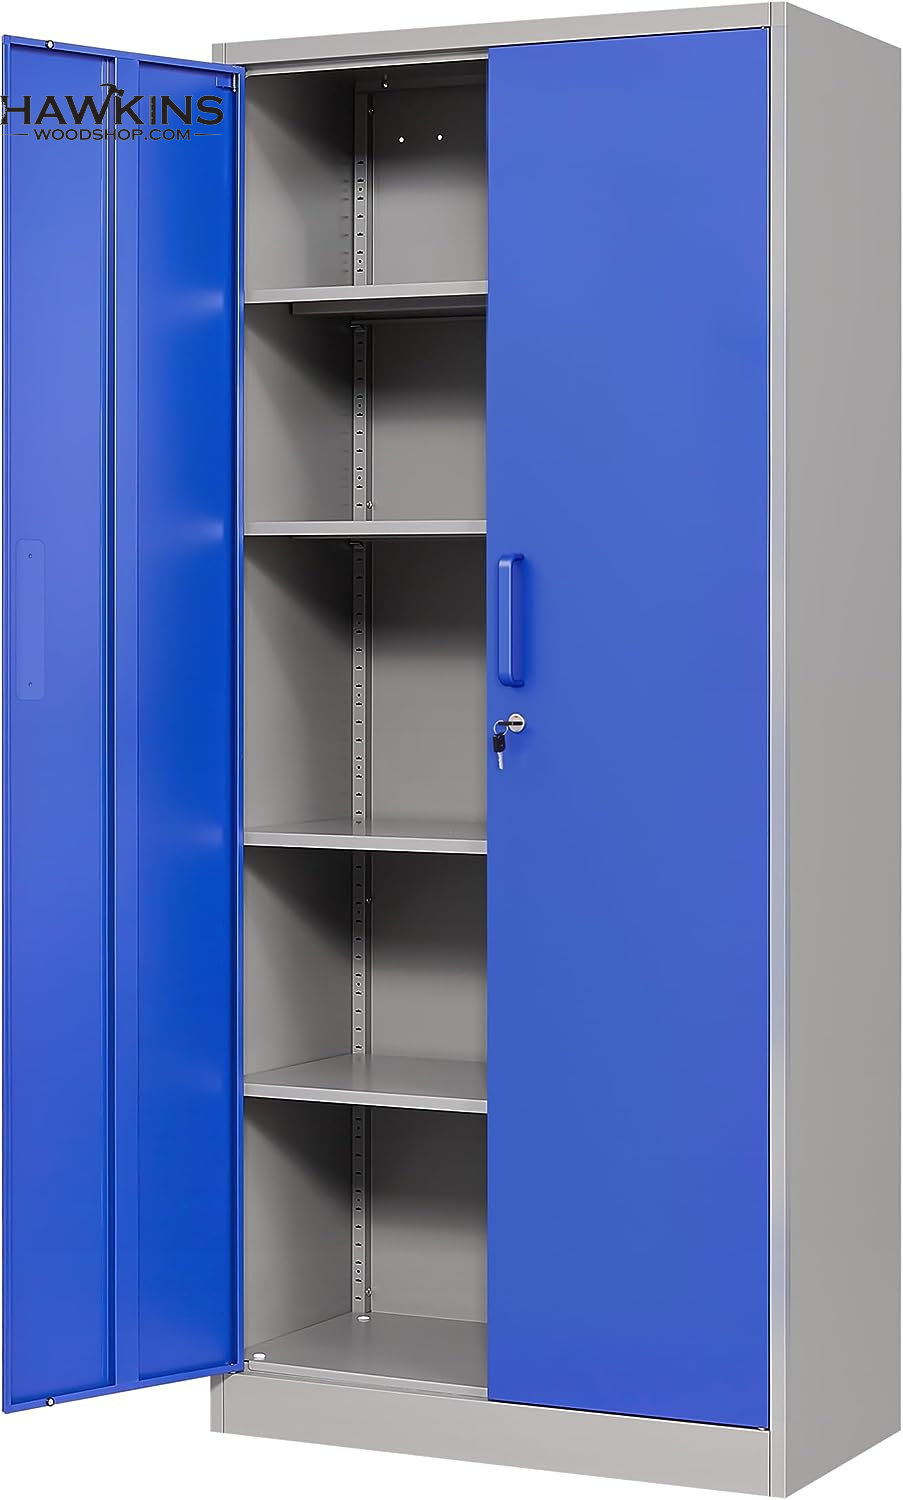 Metal Garage Storage Cabinet With 2